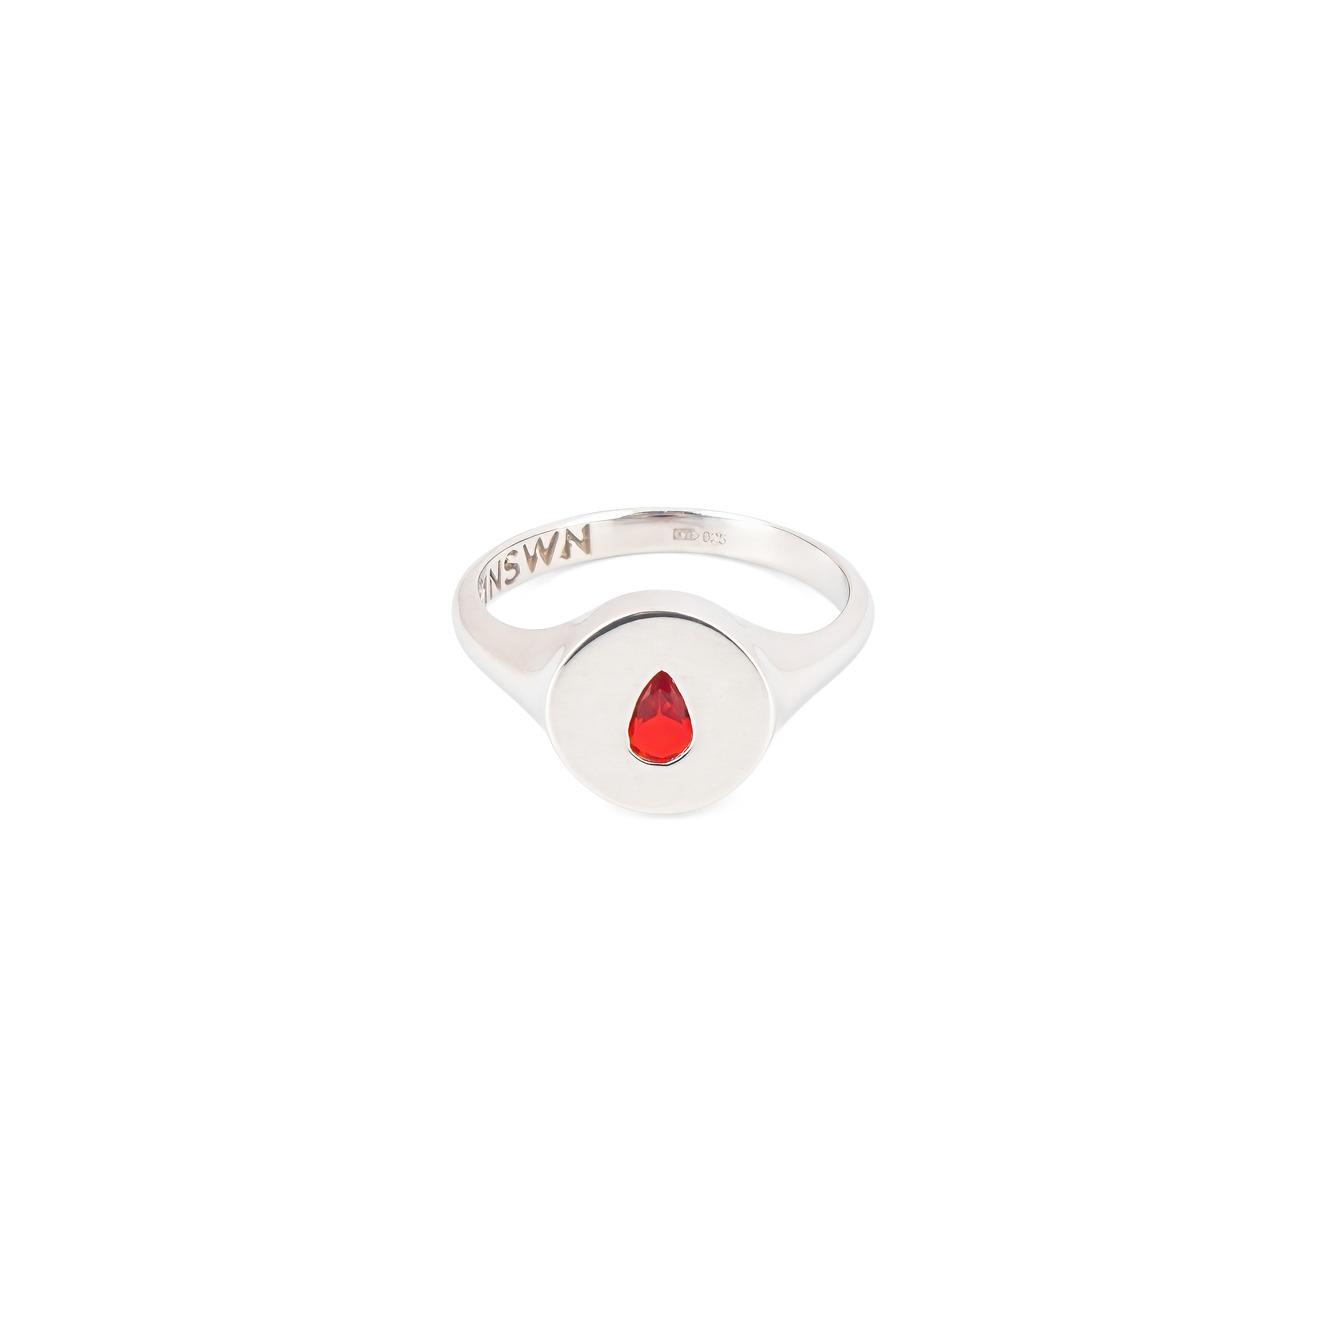 Moonswoon Кольцо-печатка из серебра с красной каплей moonswoon кольцо печатка из серебра с белым сердцем